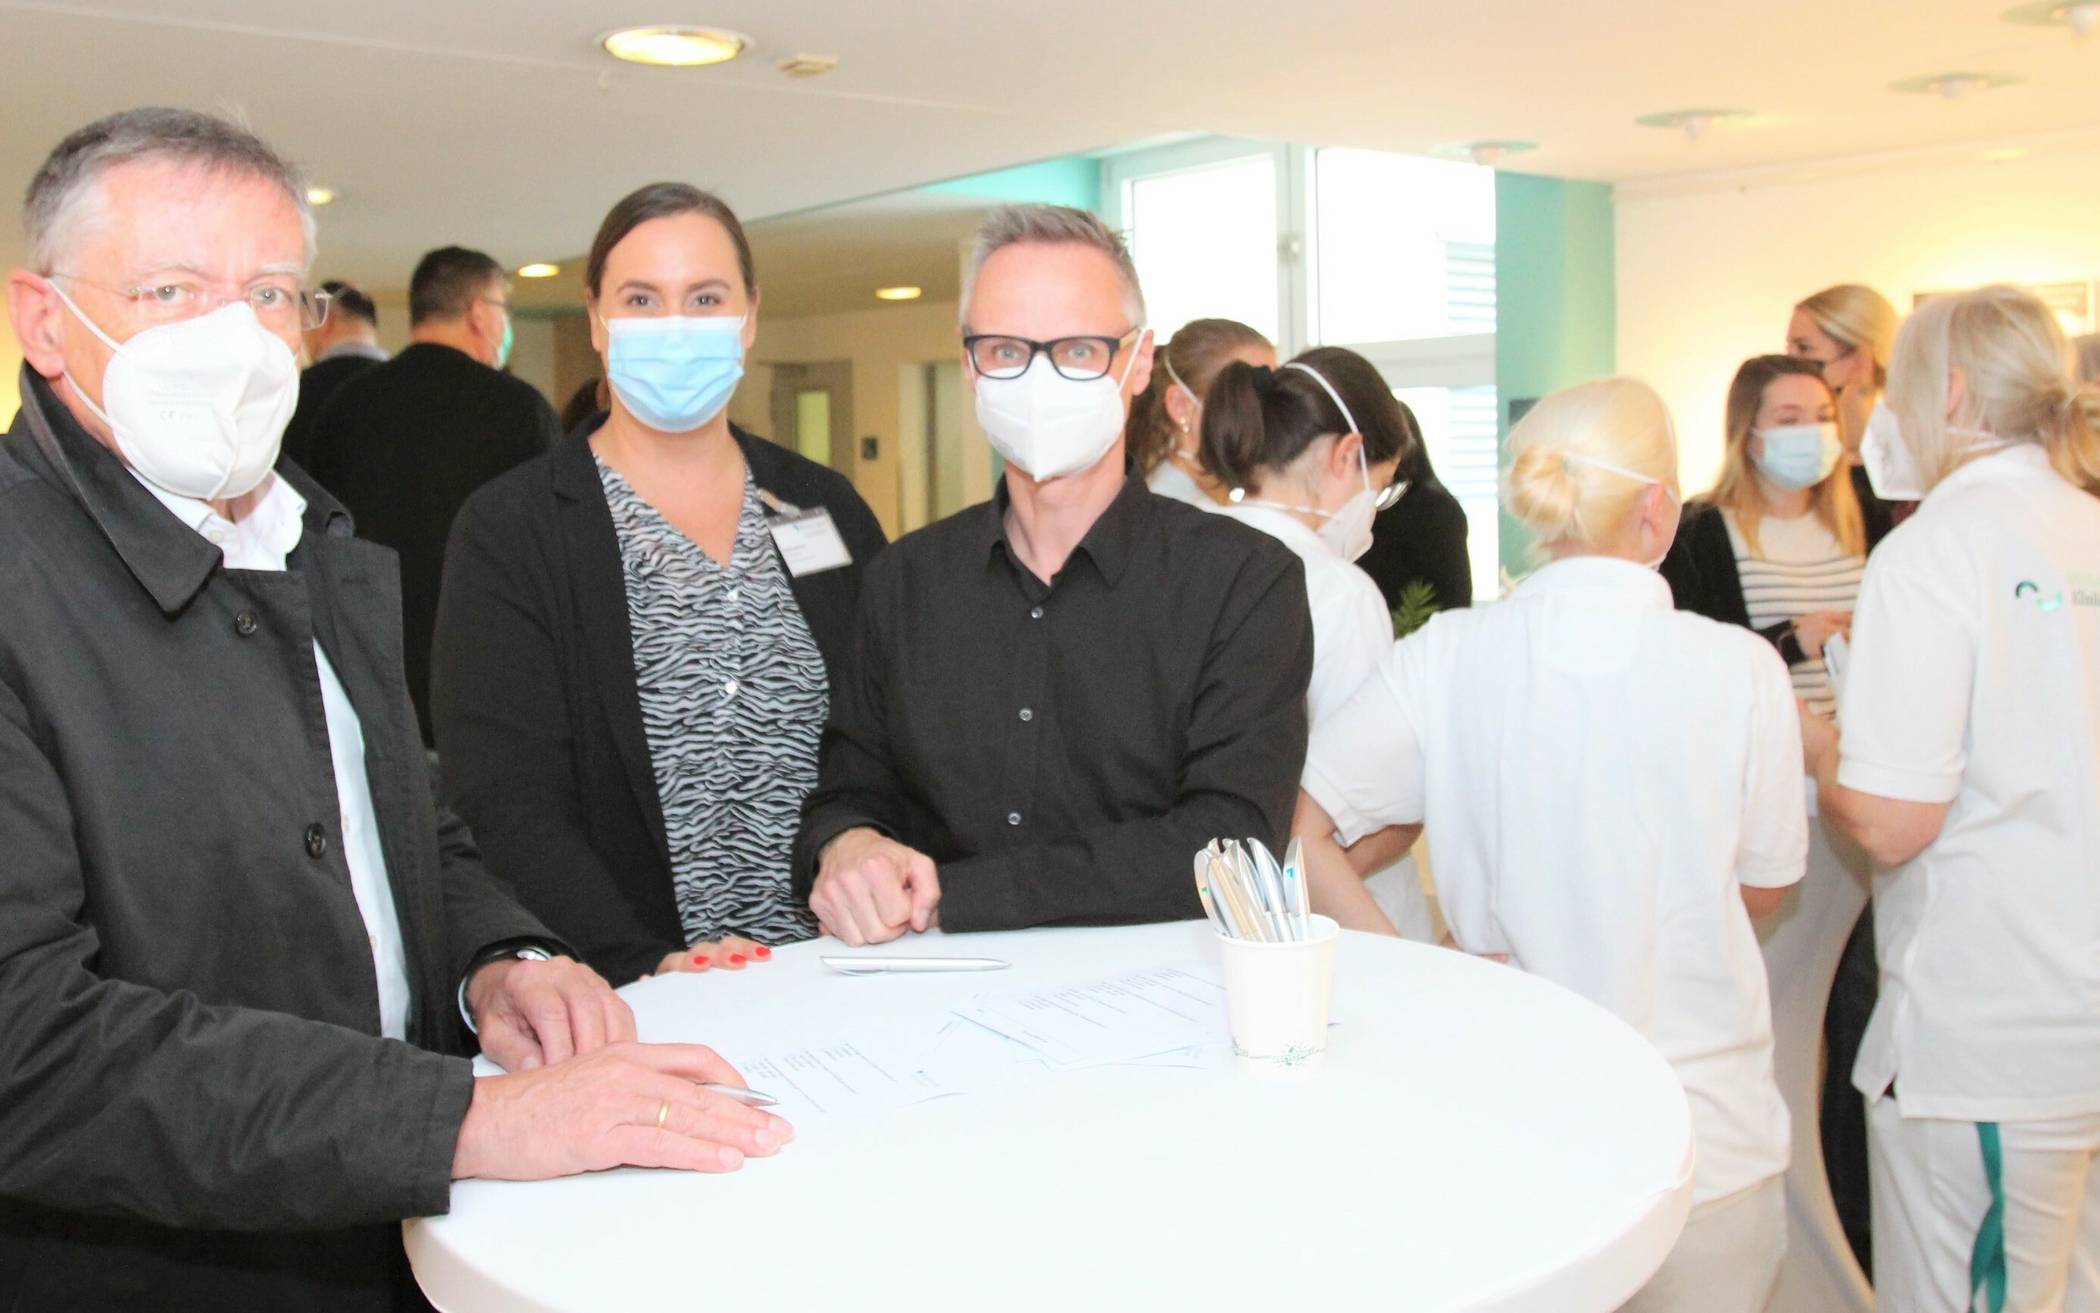 Landrat Hans-Jürgen Petrauschke, hier mit Klinikmanagerin Daniela Becker und Krankenhaushygieniker Dr. René Fussen, versuchte sich am Wissens-Quiz rund um Hygiene-Themen.